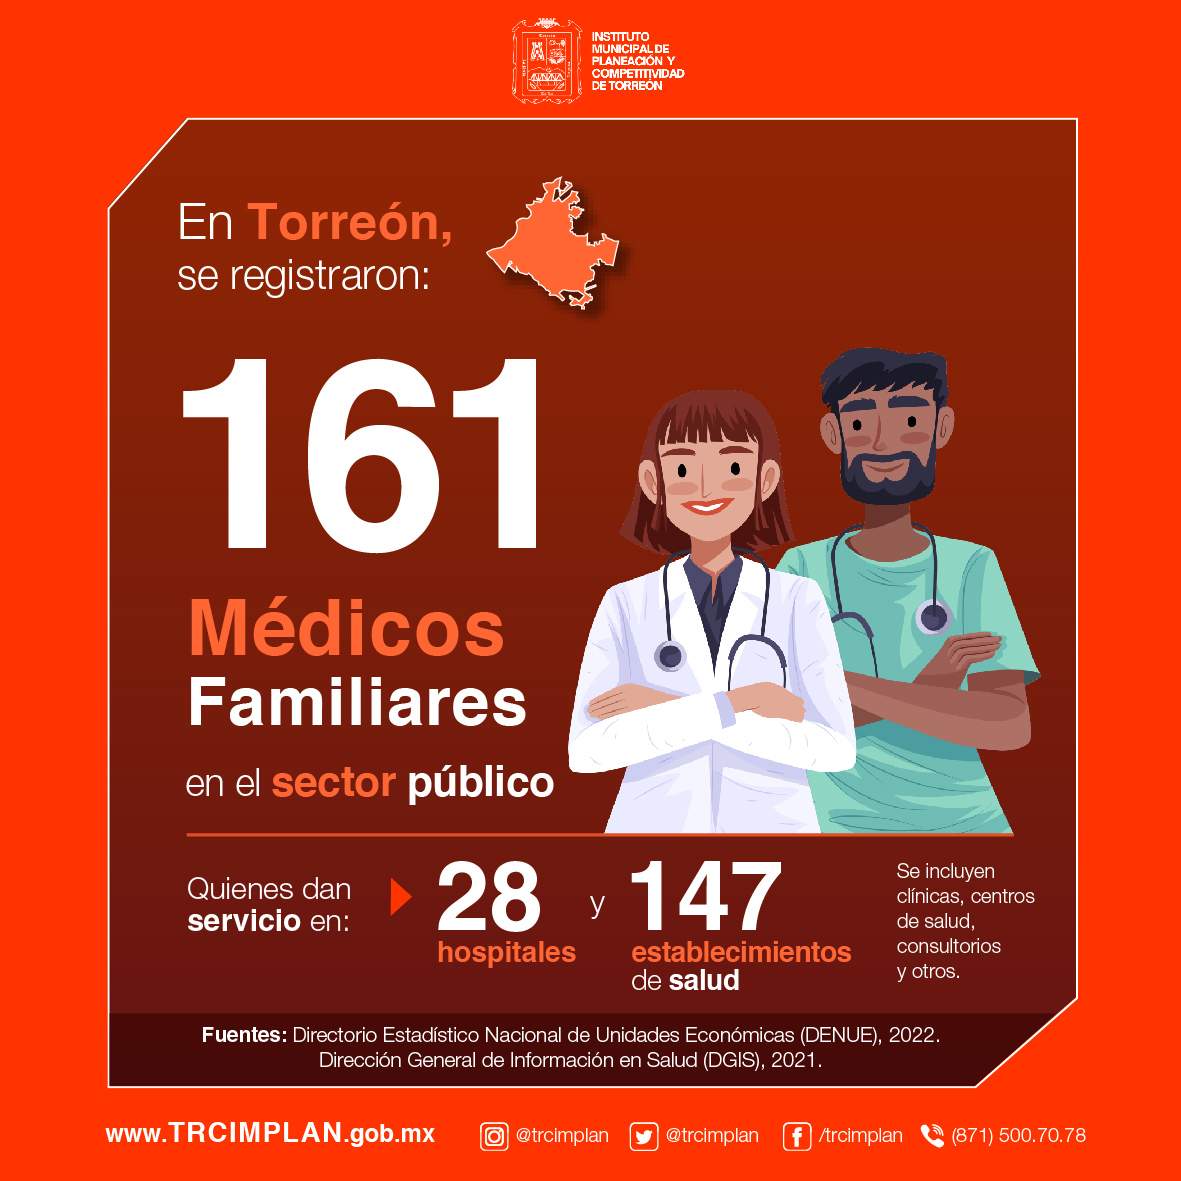 🗨️ Entérate: bit.ly/3pZY7sL
#torreon #lalaguna #medicosfamiliares #sectorpublico